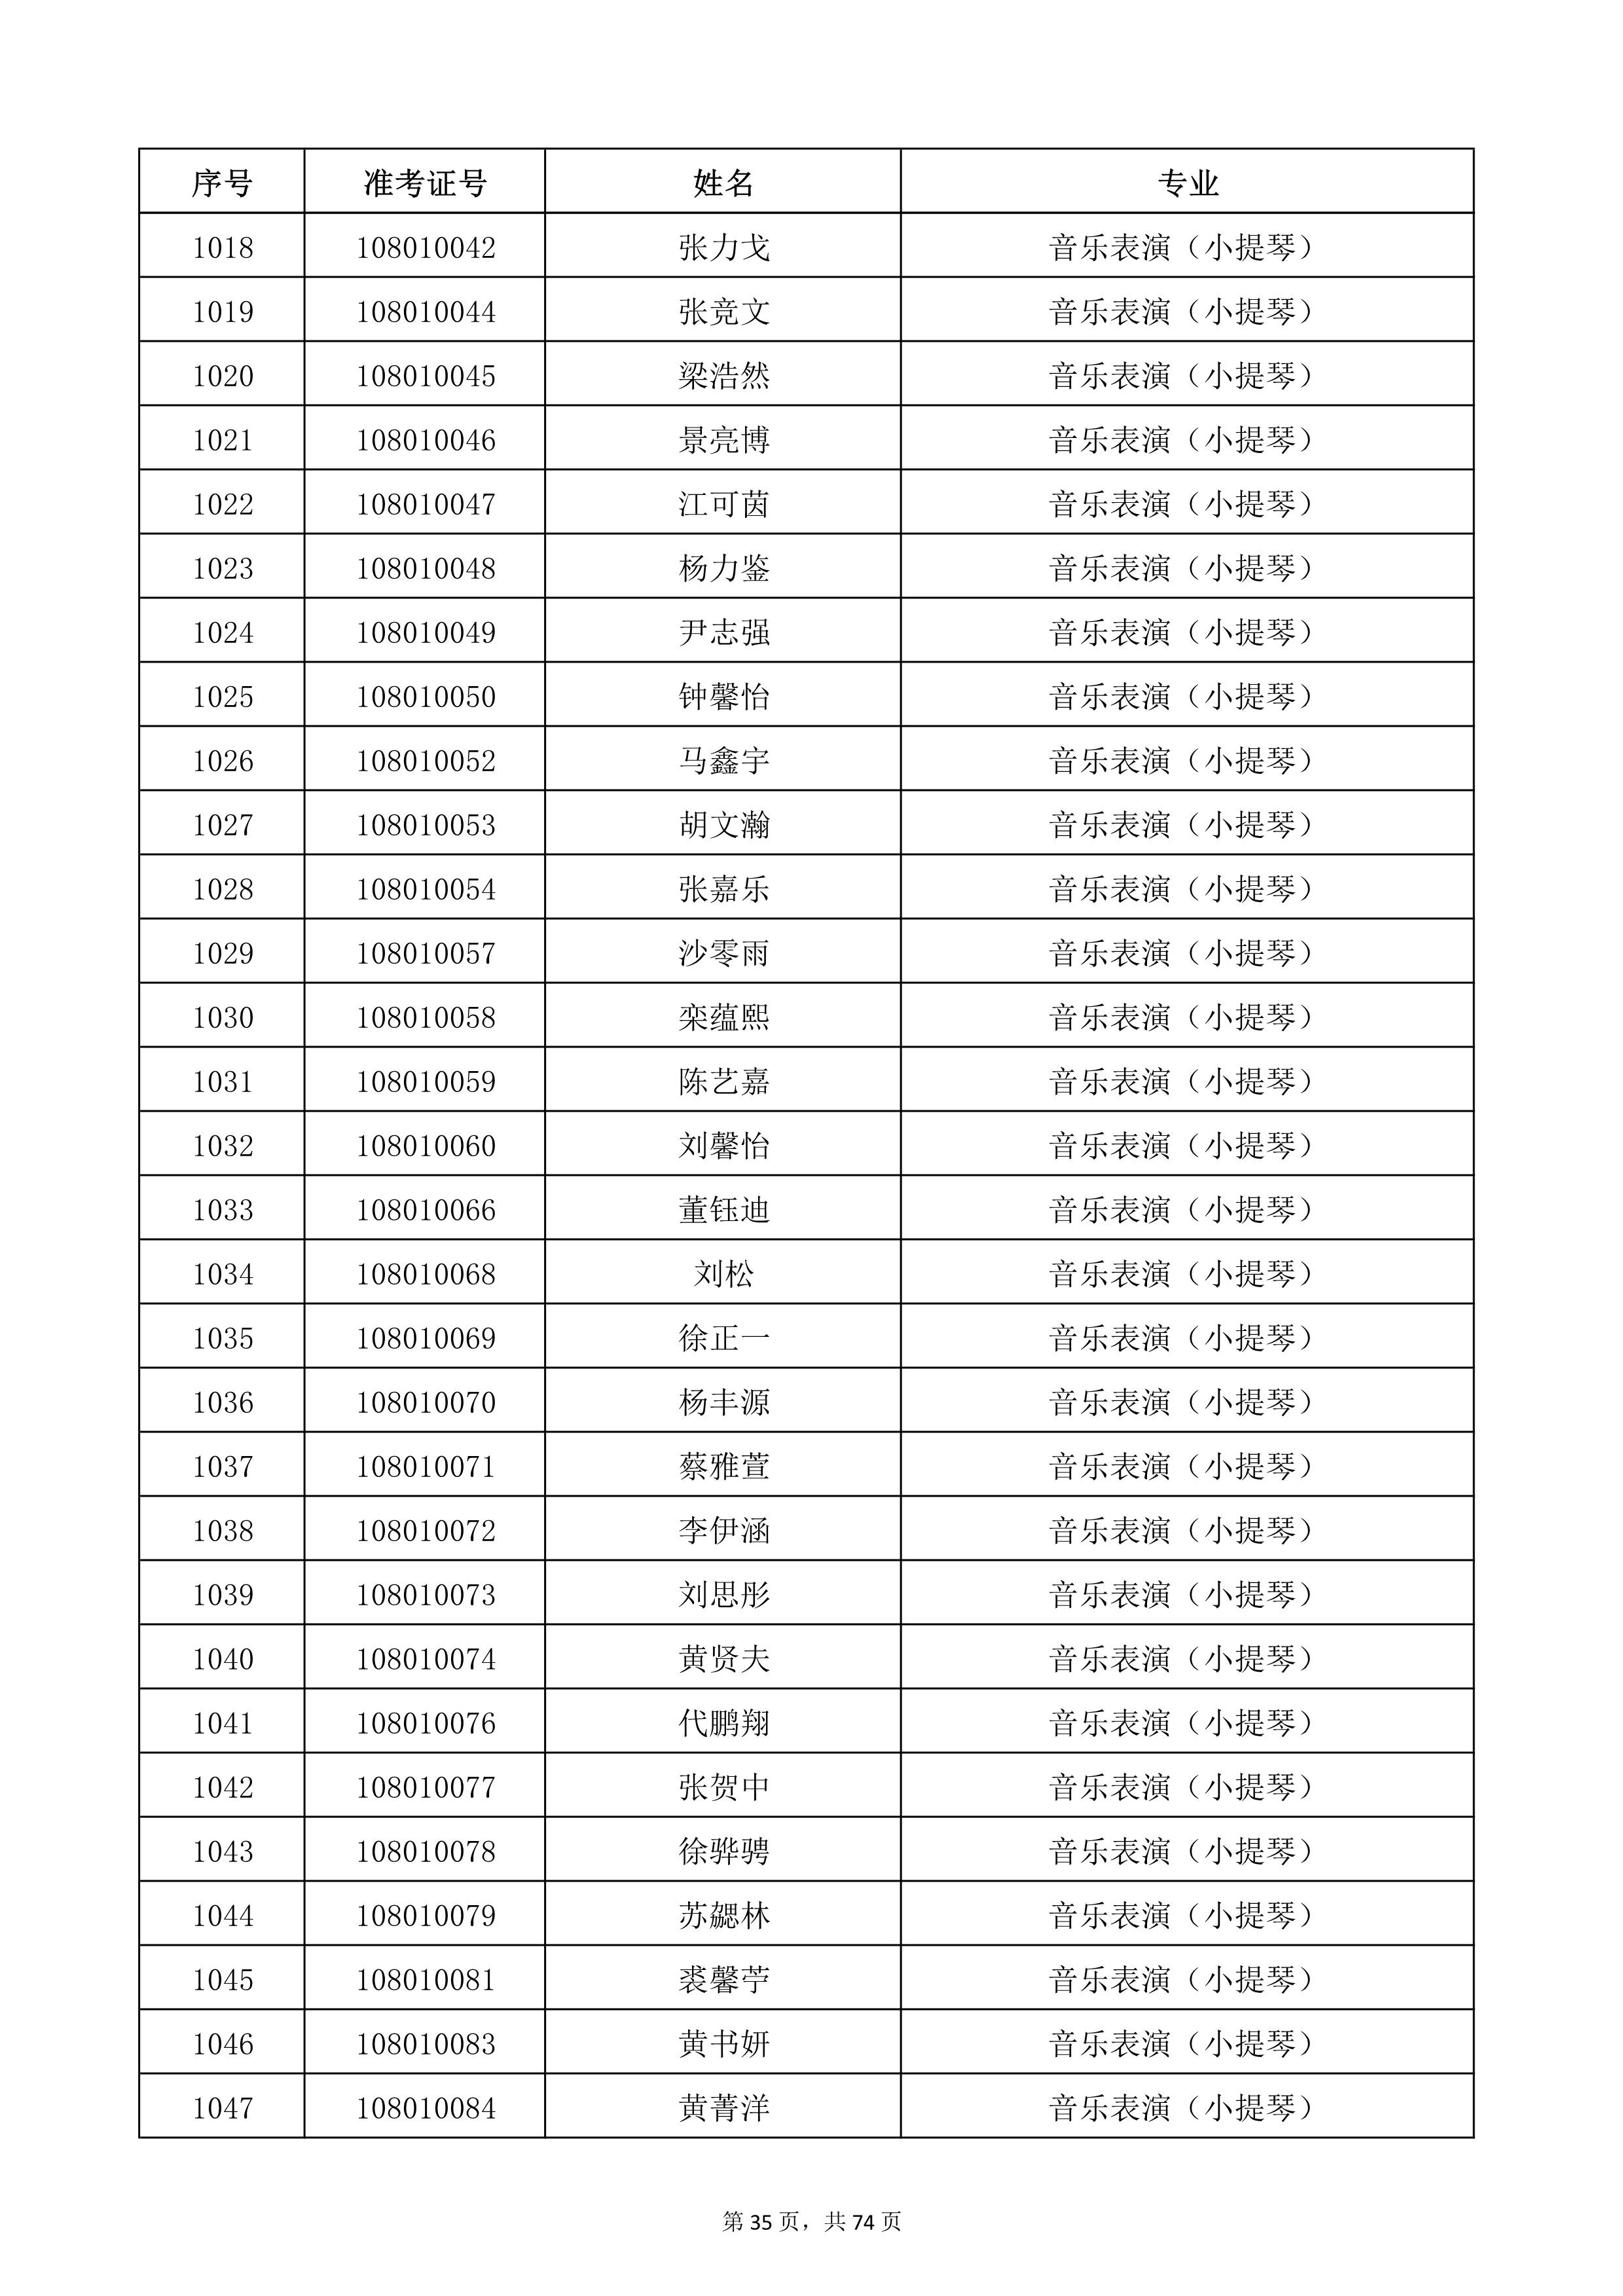 天津音乐学院2022年本科招生考试复试名单_35.jpg